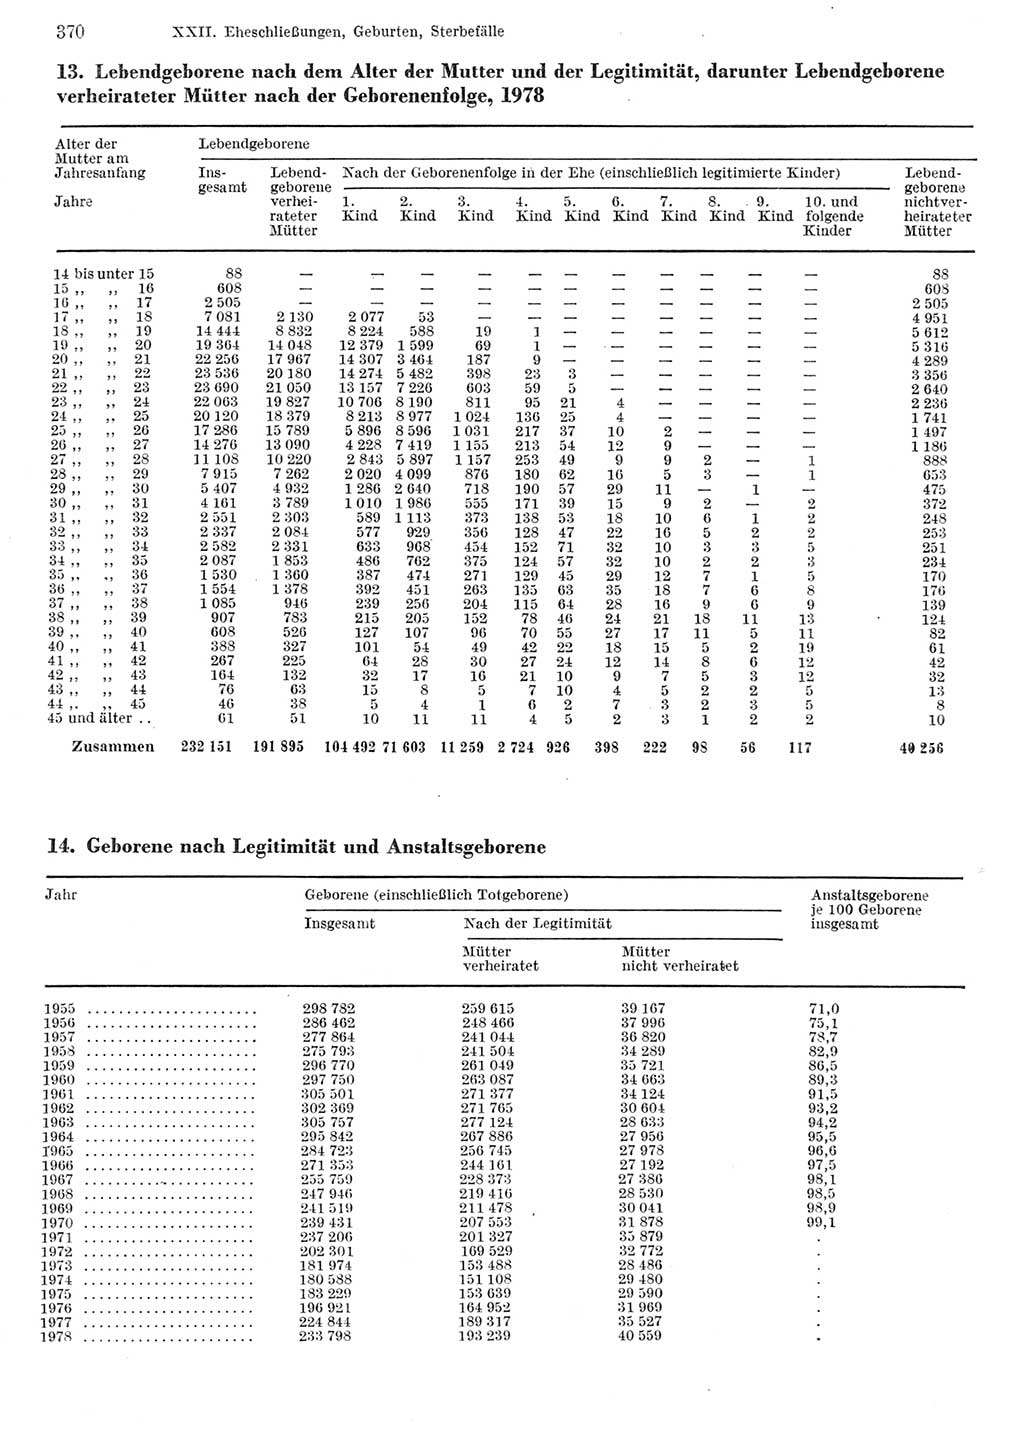 Statistisches Jahrbuch der Deutschen Demokratischen Republik (DDR) 1980, Seite 370 (Stat. Jb. DDR 1980, S. 370)